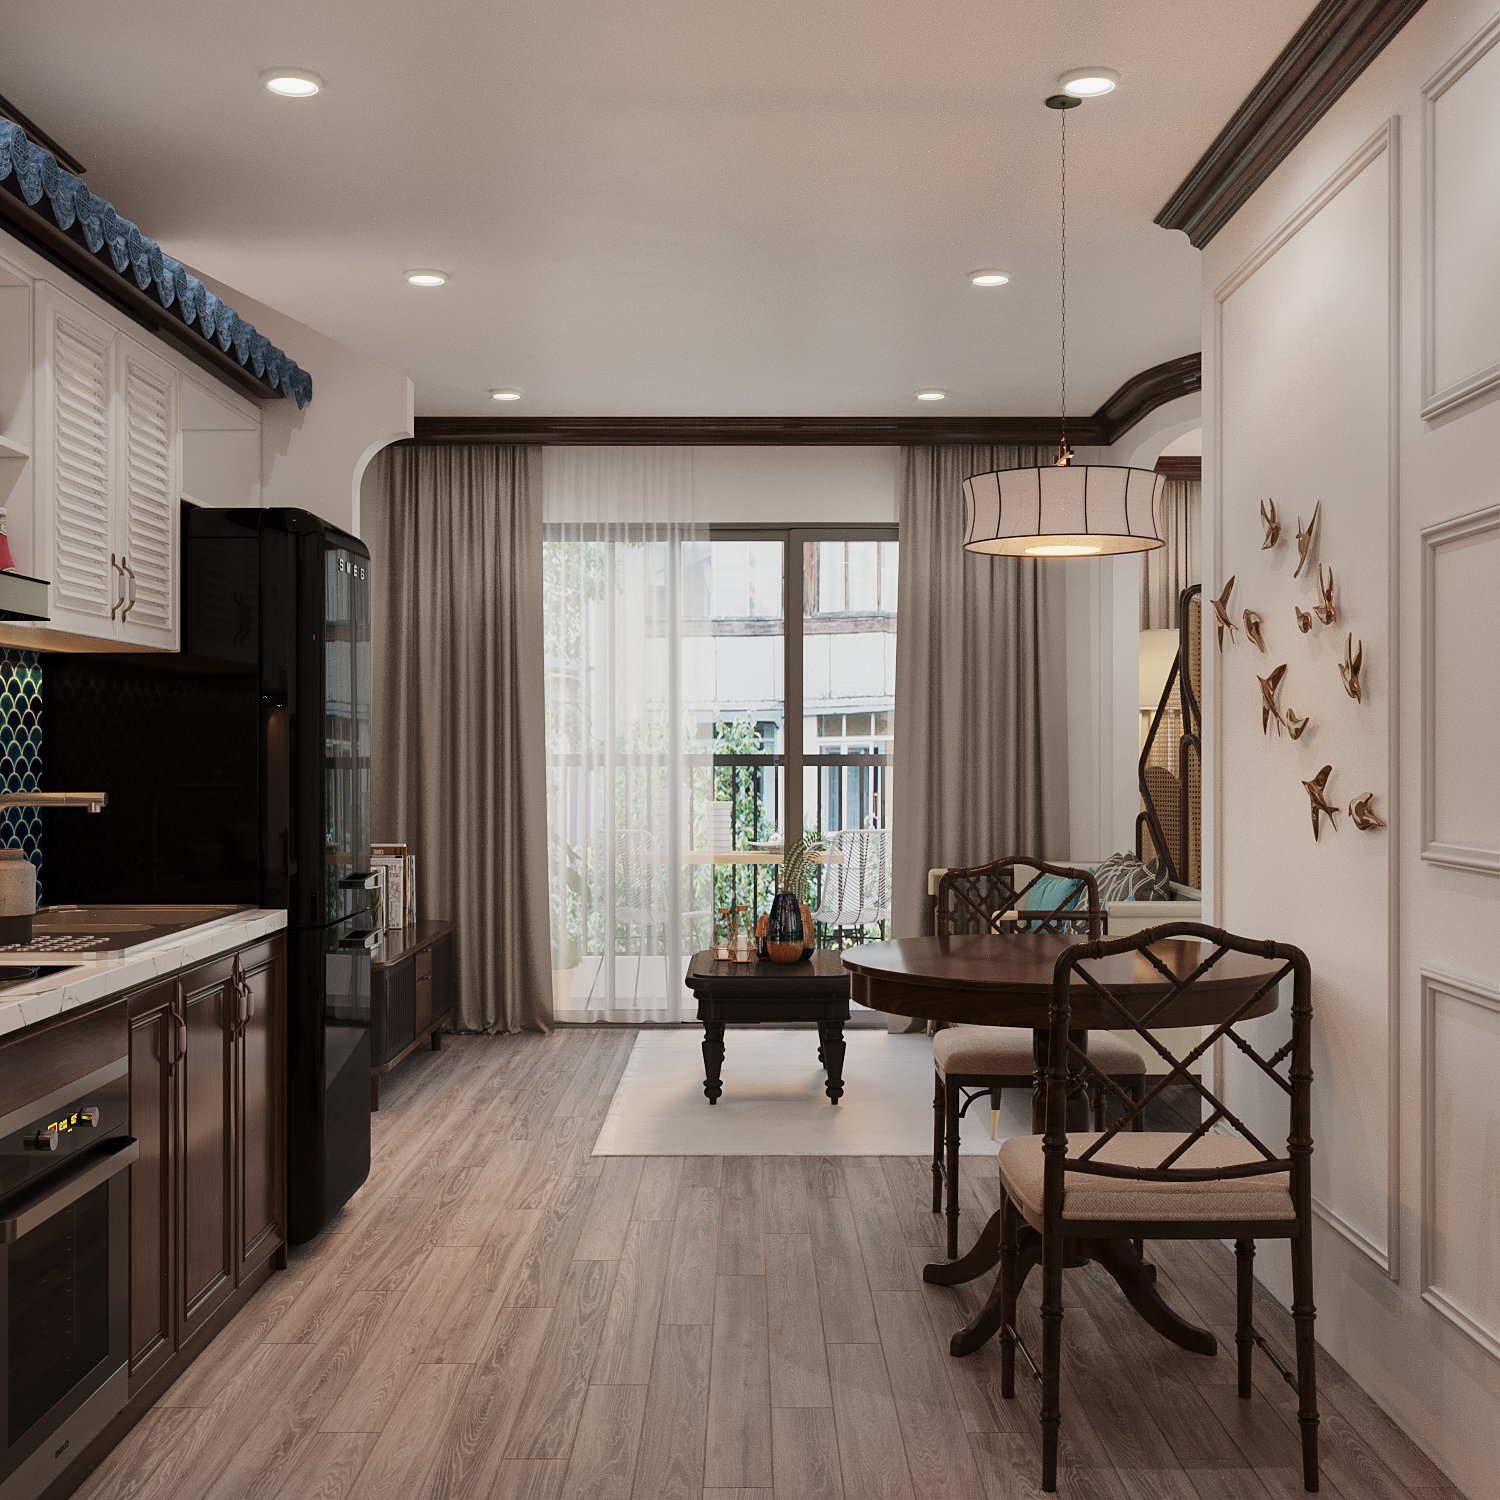 Không gian bếp - ăn được thiết kế liên thông với phòng khách và tận dụng được tối đa ánh sáng tự nhiên từ cửa kính mở ra ban công căn hộ 64m2.